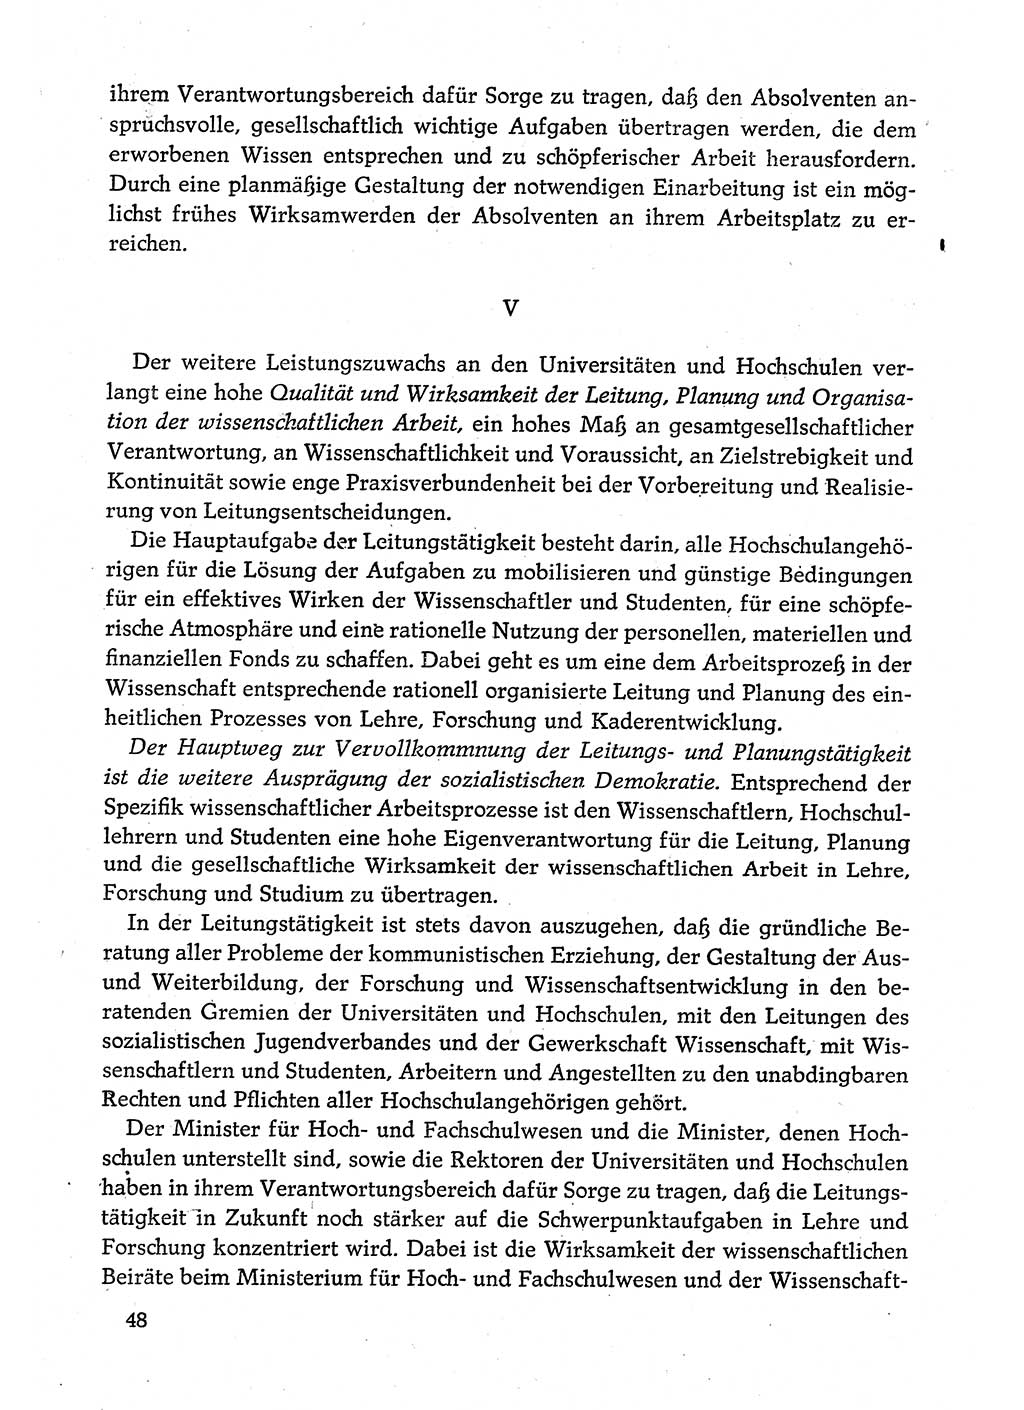 Dokumente der Sozialistischen Einheitspartei Deutschlands (SED) [Deutsche Demokratische Republik (DDR)] 1980-1981, Seite 48 (Dok. SED DDR 1980-1981, S. 48)